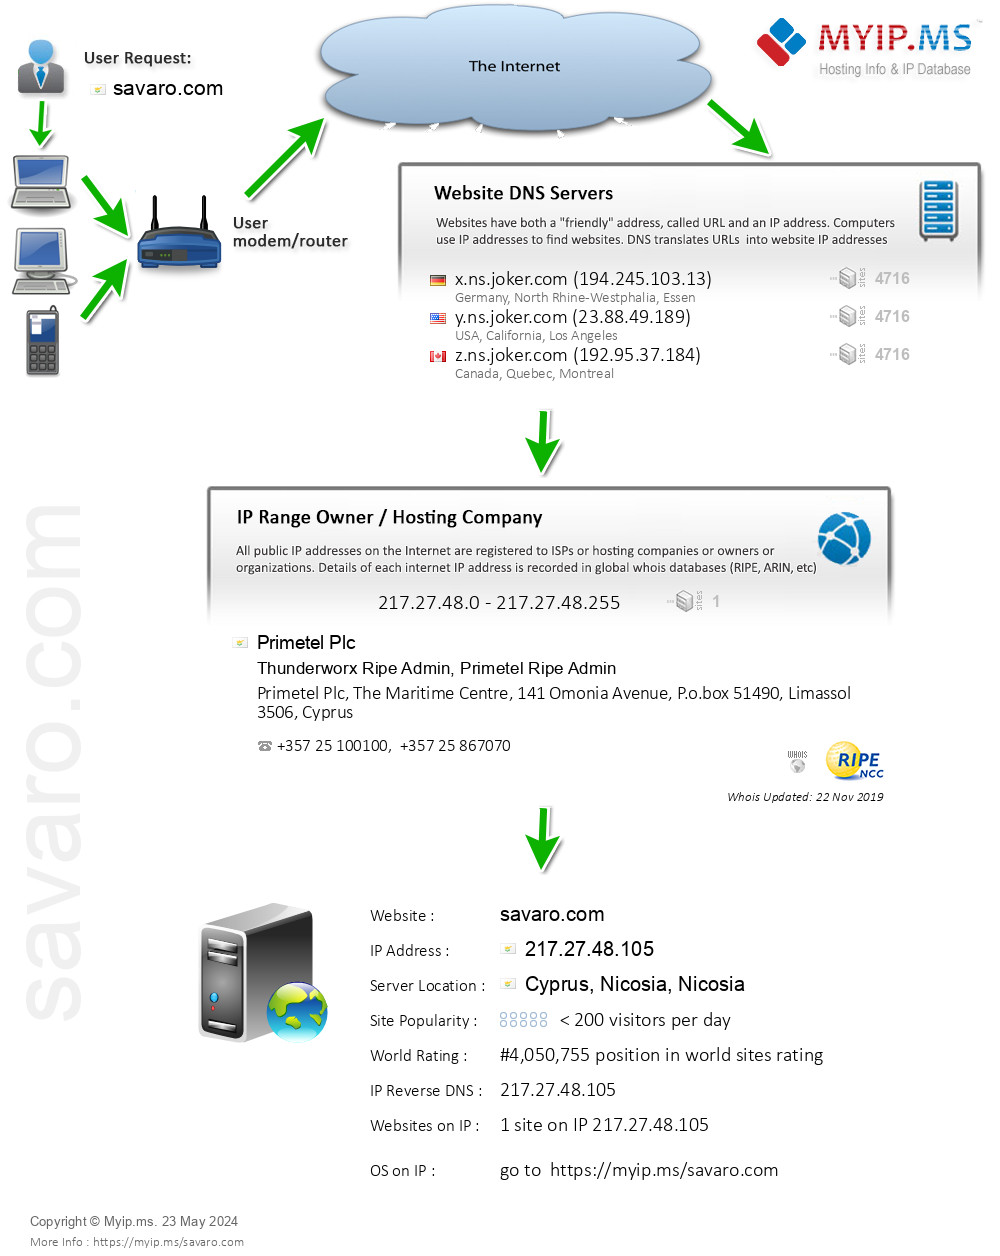 Savaro.com - Website Hosting Visual IP Diagram